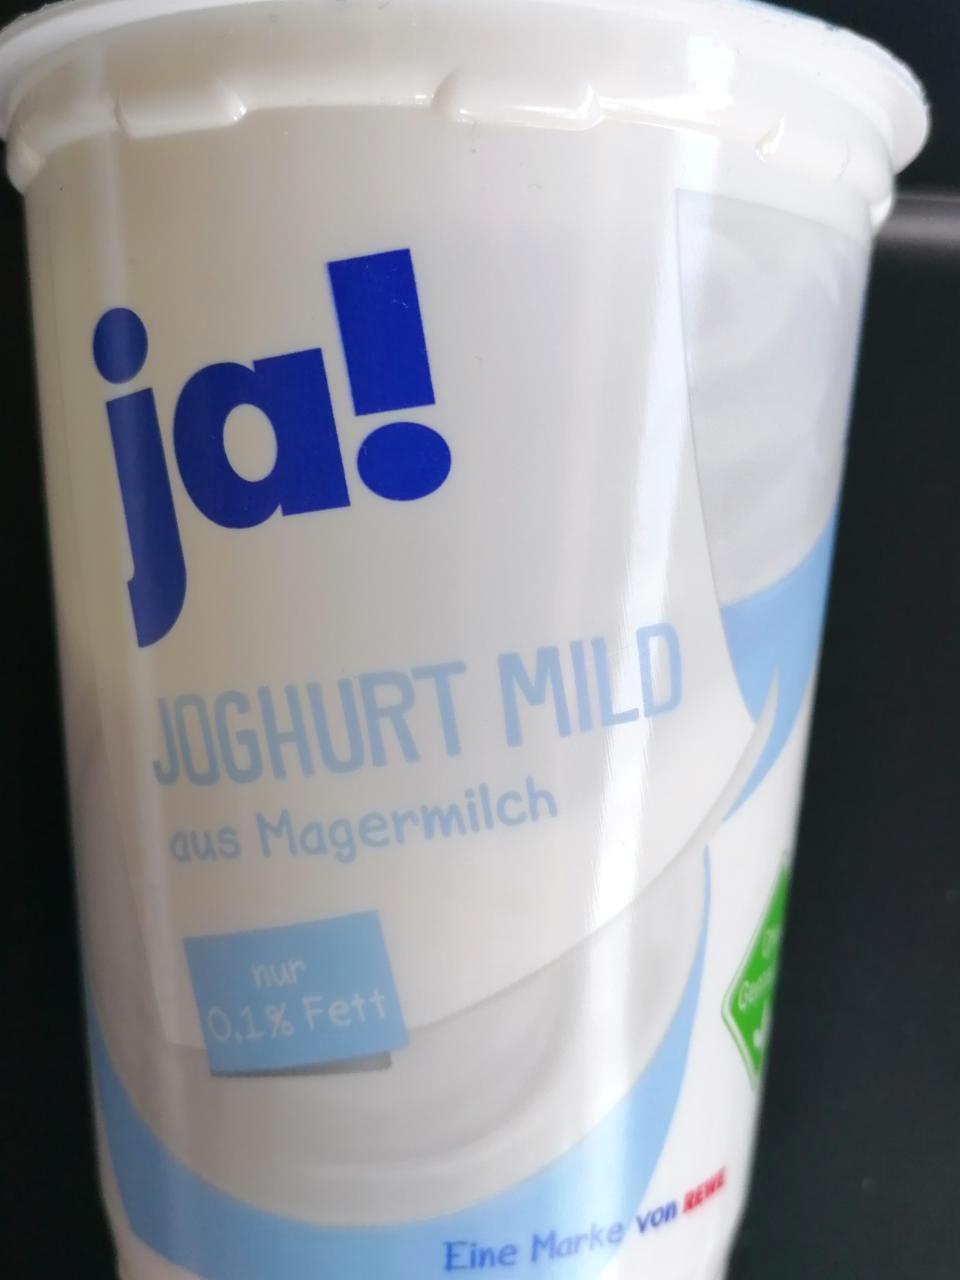 Képek - Joghurt Mild Ja!